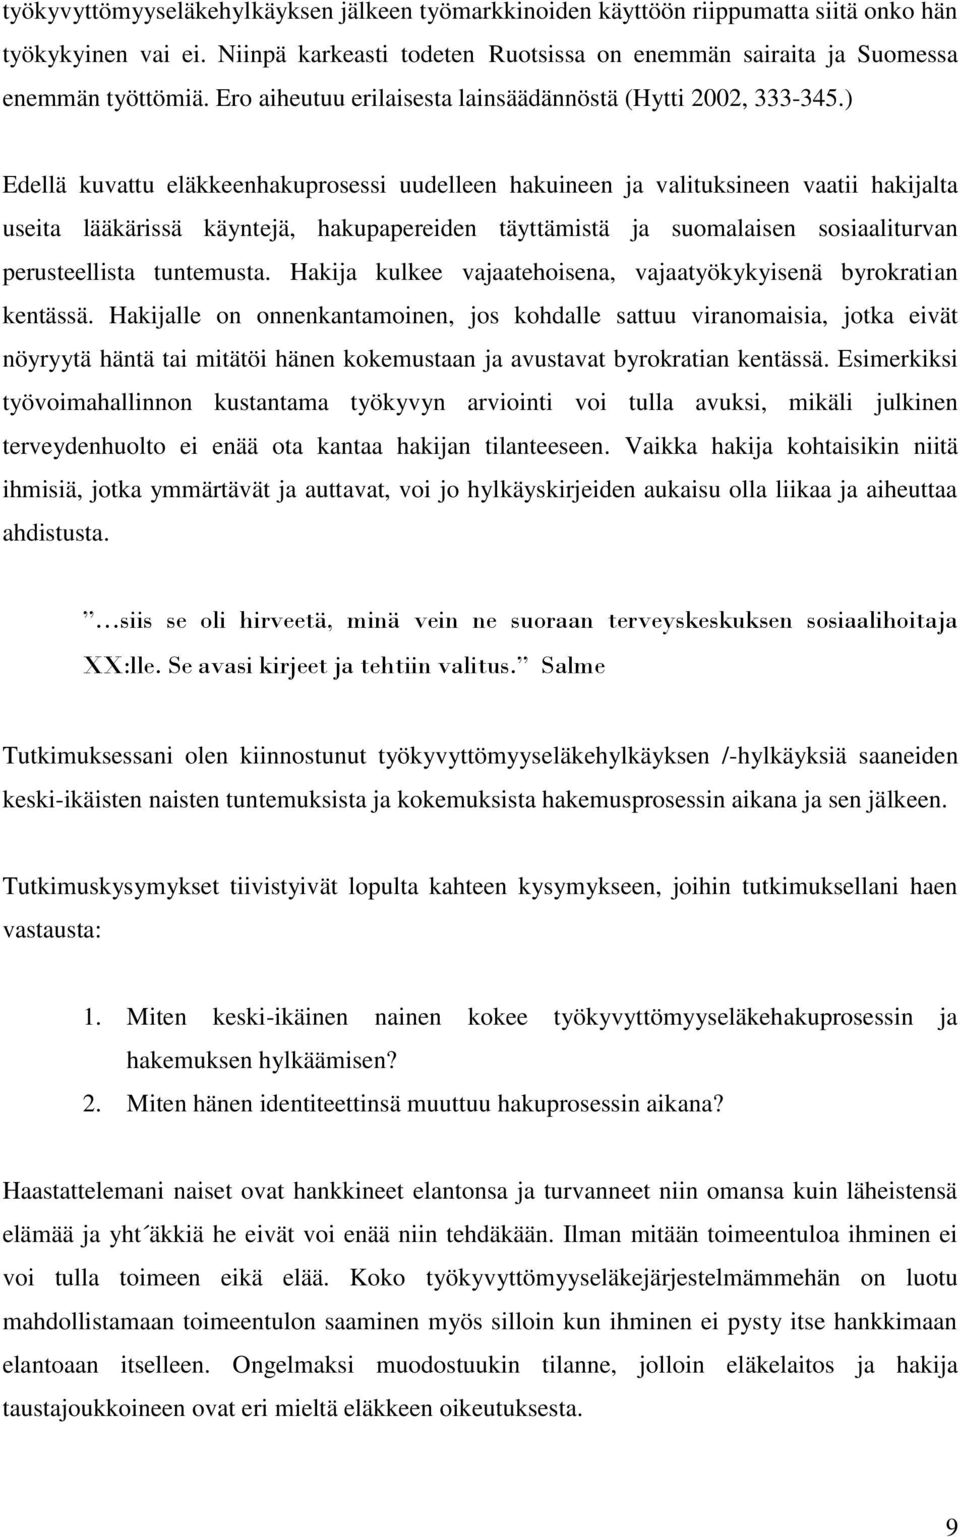 ) Edellä kuvattu eläkkeenhakuprosessi uudelleen hakuineen ja valituksineen vaatii hakijalta useita lääkärissä käyntejä, hakupapereiden täyttämistä ja suomalaisen sosiaaliturvan perusteellista